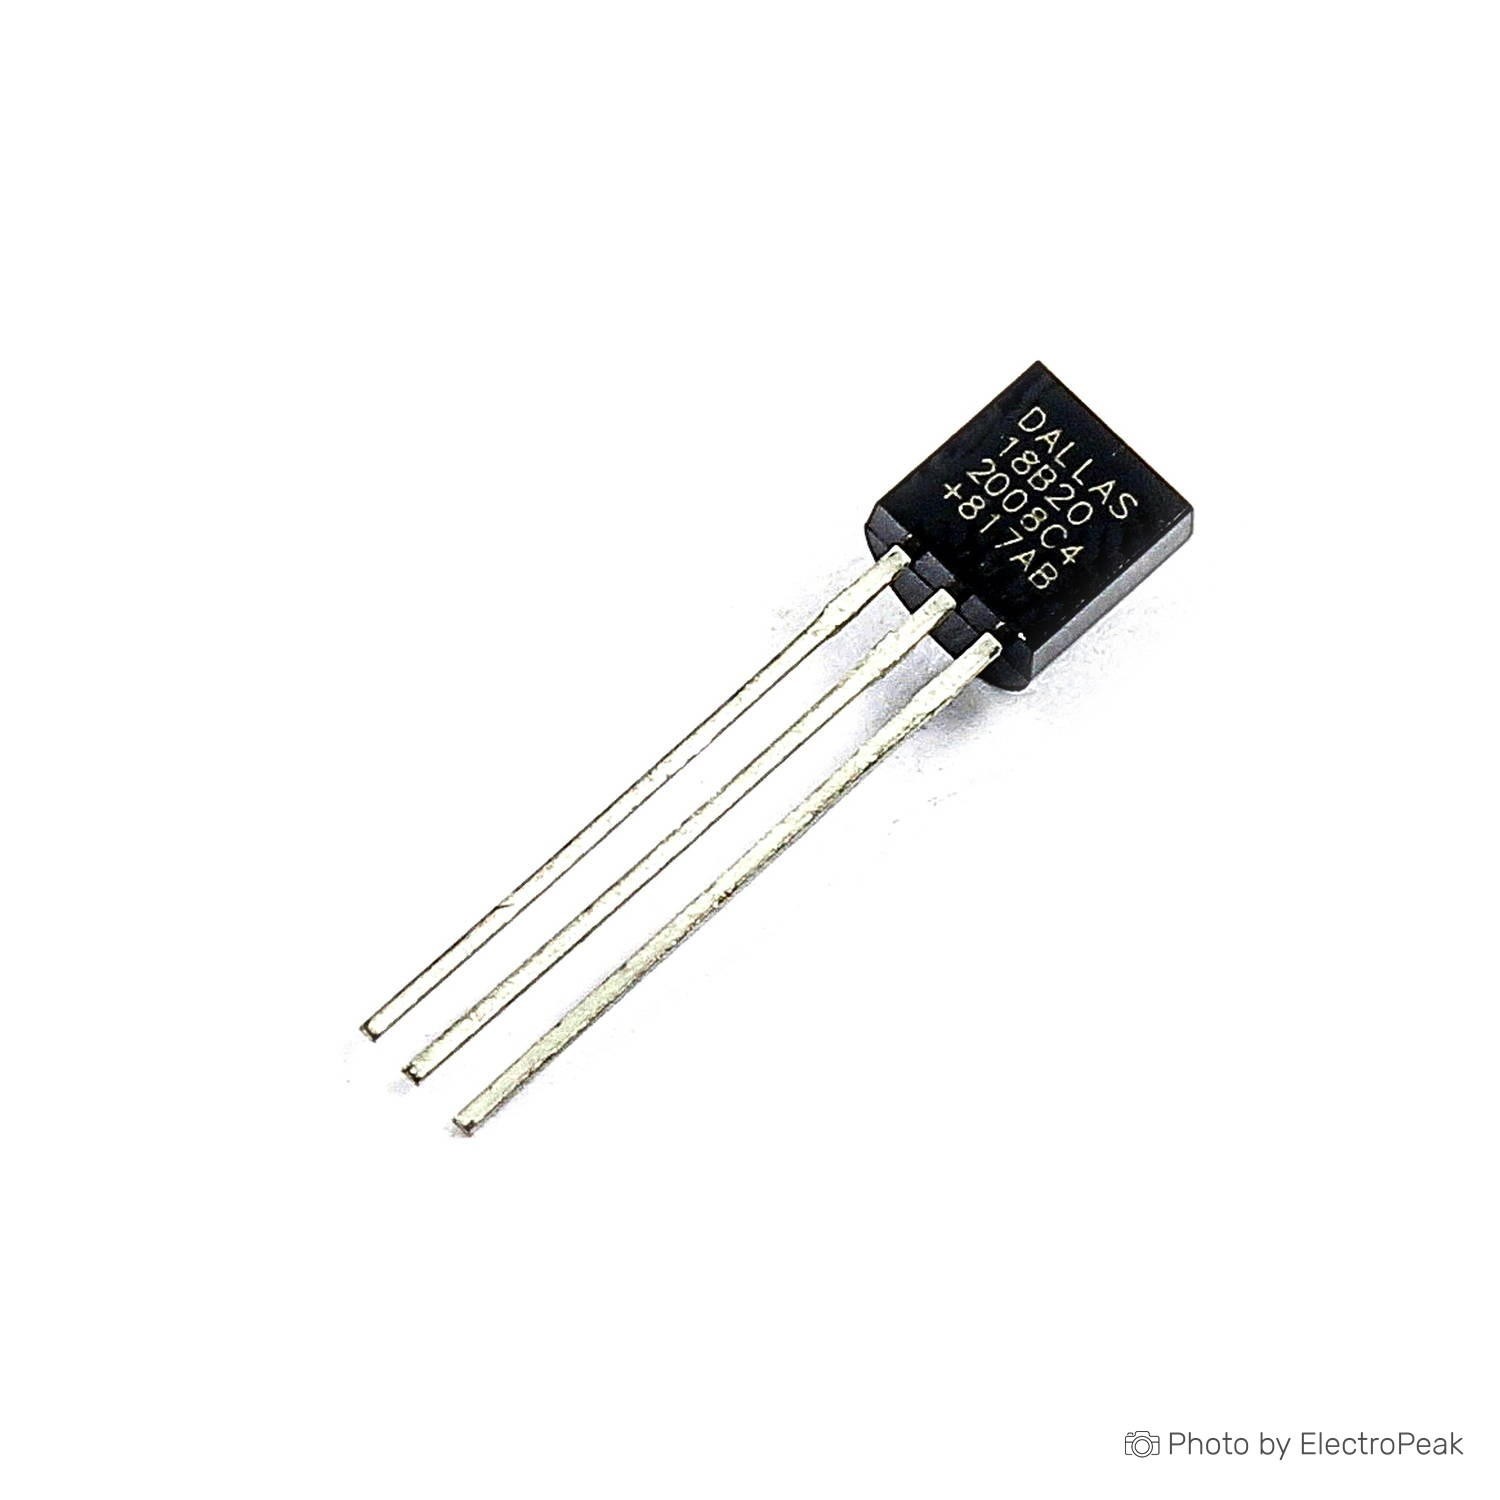 DS18B20 DALLAS 18B20 TO-92 1 Wire Digital Temperature Sensor For